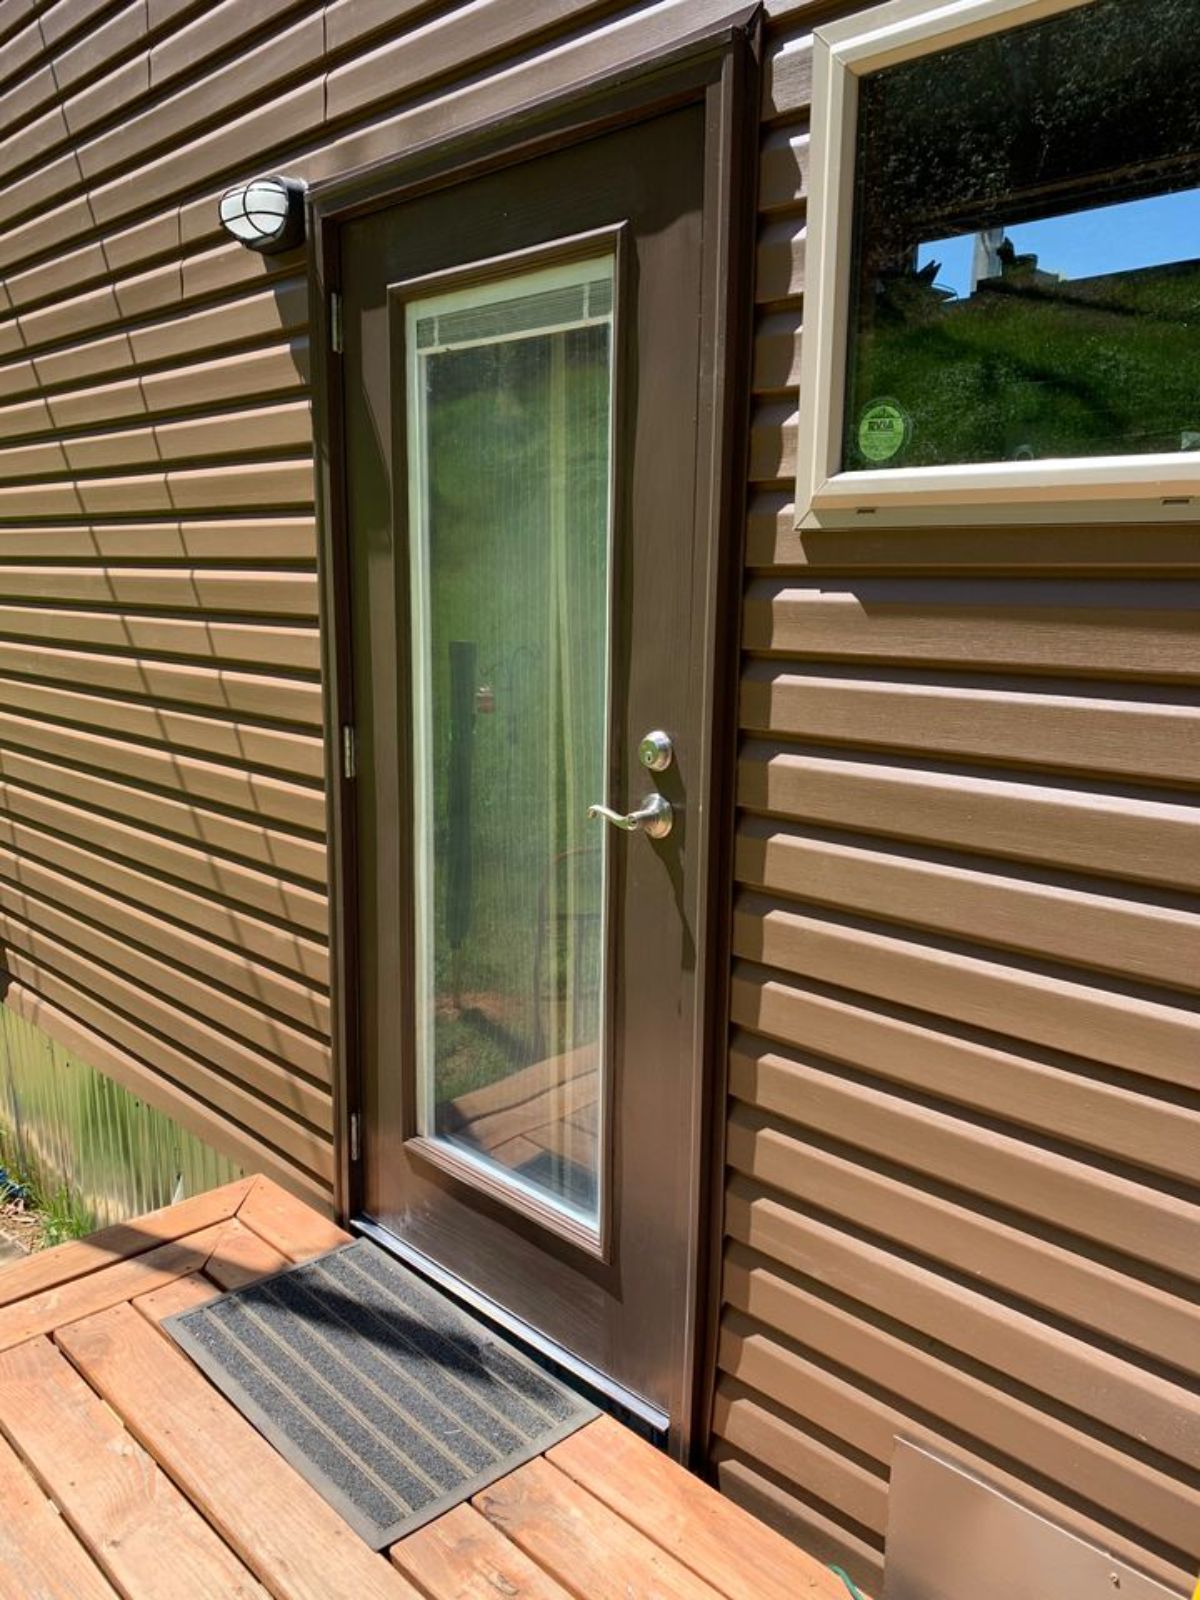 dark brown trim around glass front door against brown siding